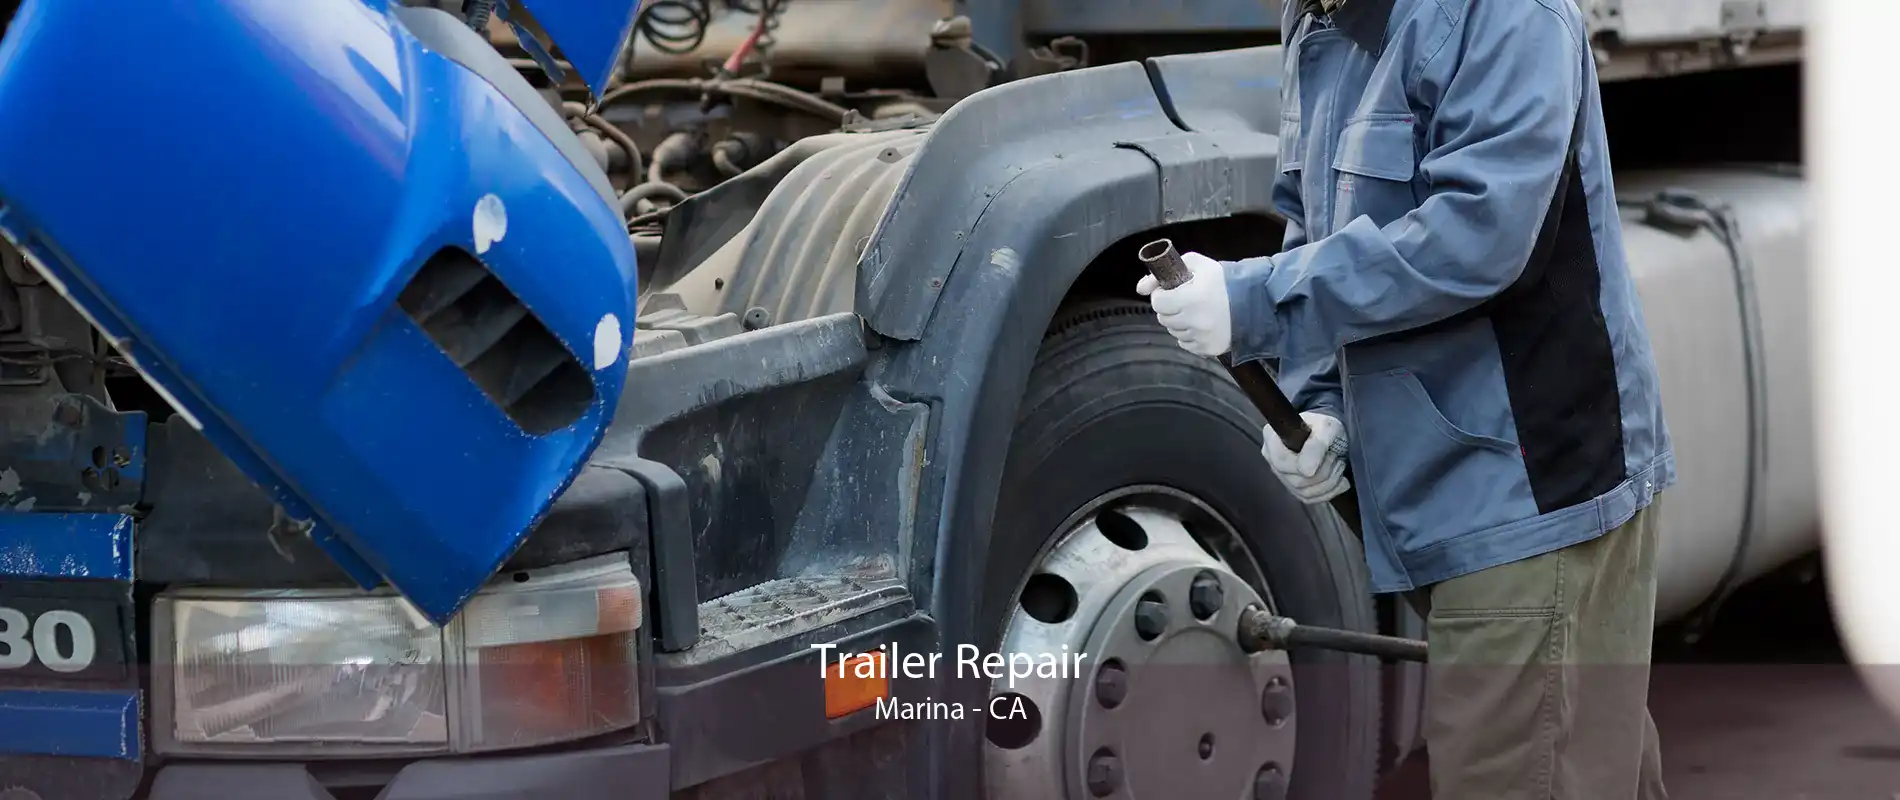 Trailer Repair Marina - CA